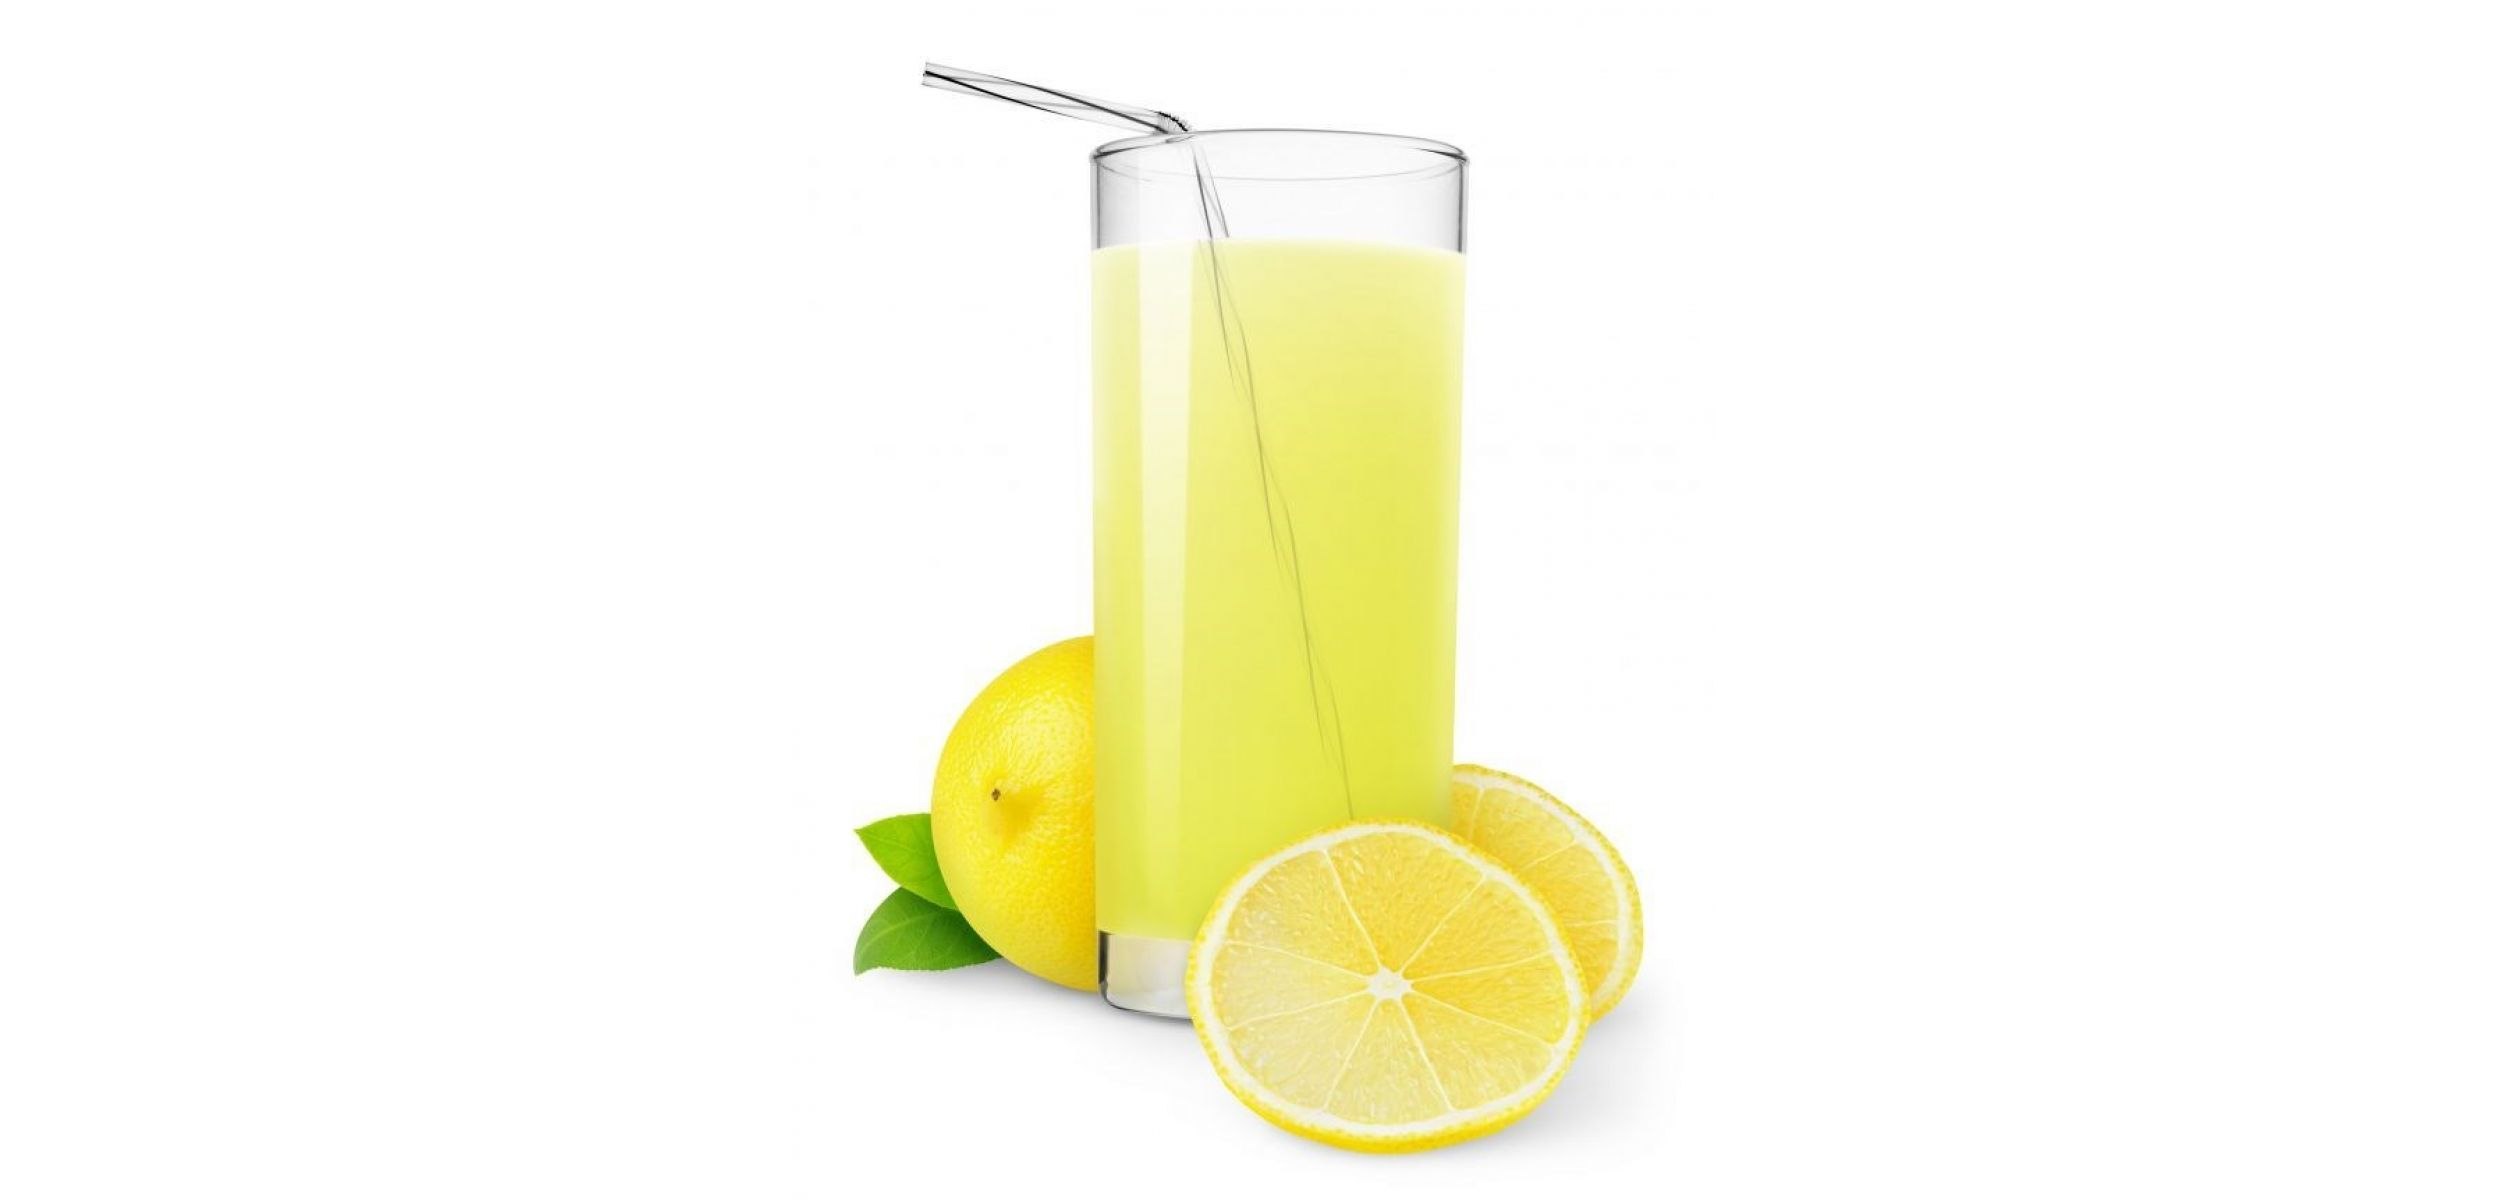 Сока лимона и 2. Лимонад на белом фоне. Лимонад в стакане. Лимонад (напиток) на белом фоне. Желтый напиток в стакане.